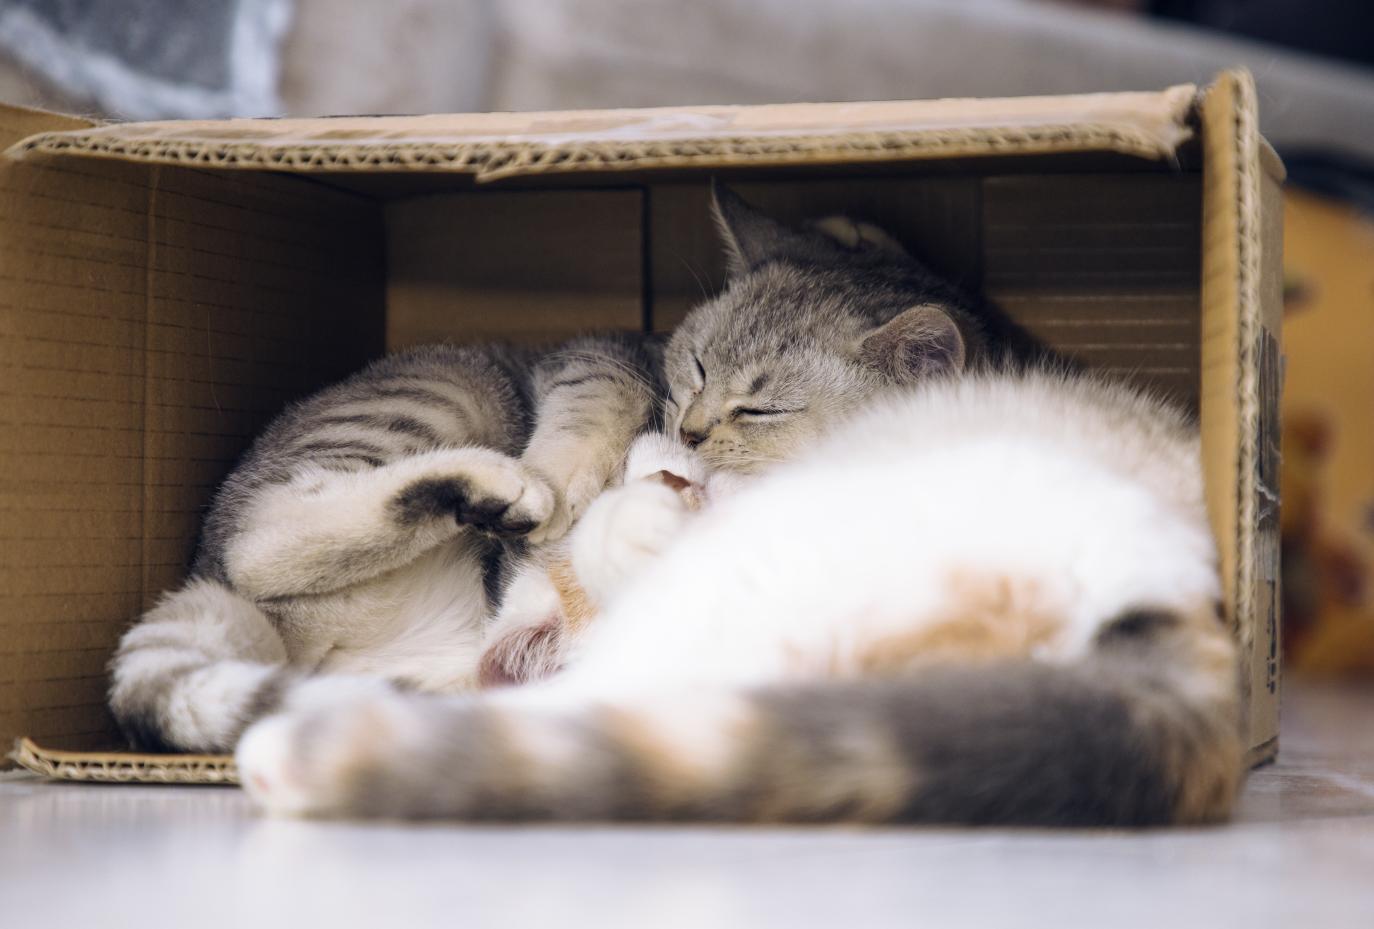 盒子放久了会长出猫,长猫的盒子,纸盒里会长出猫,猫和盒子